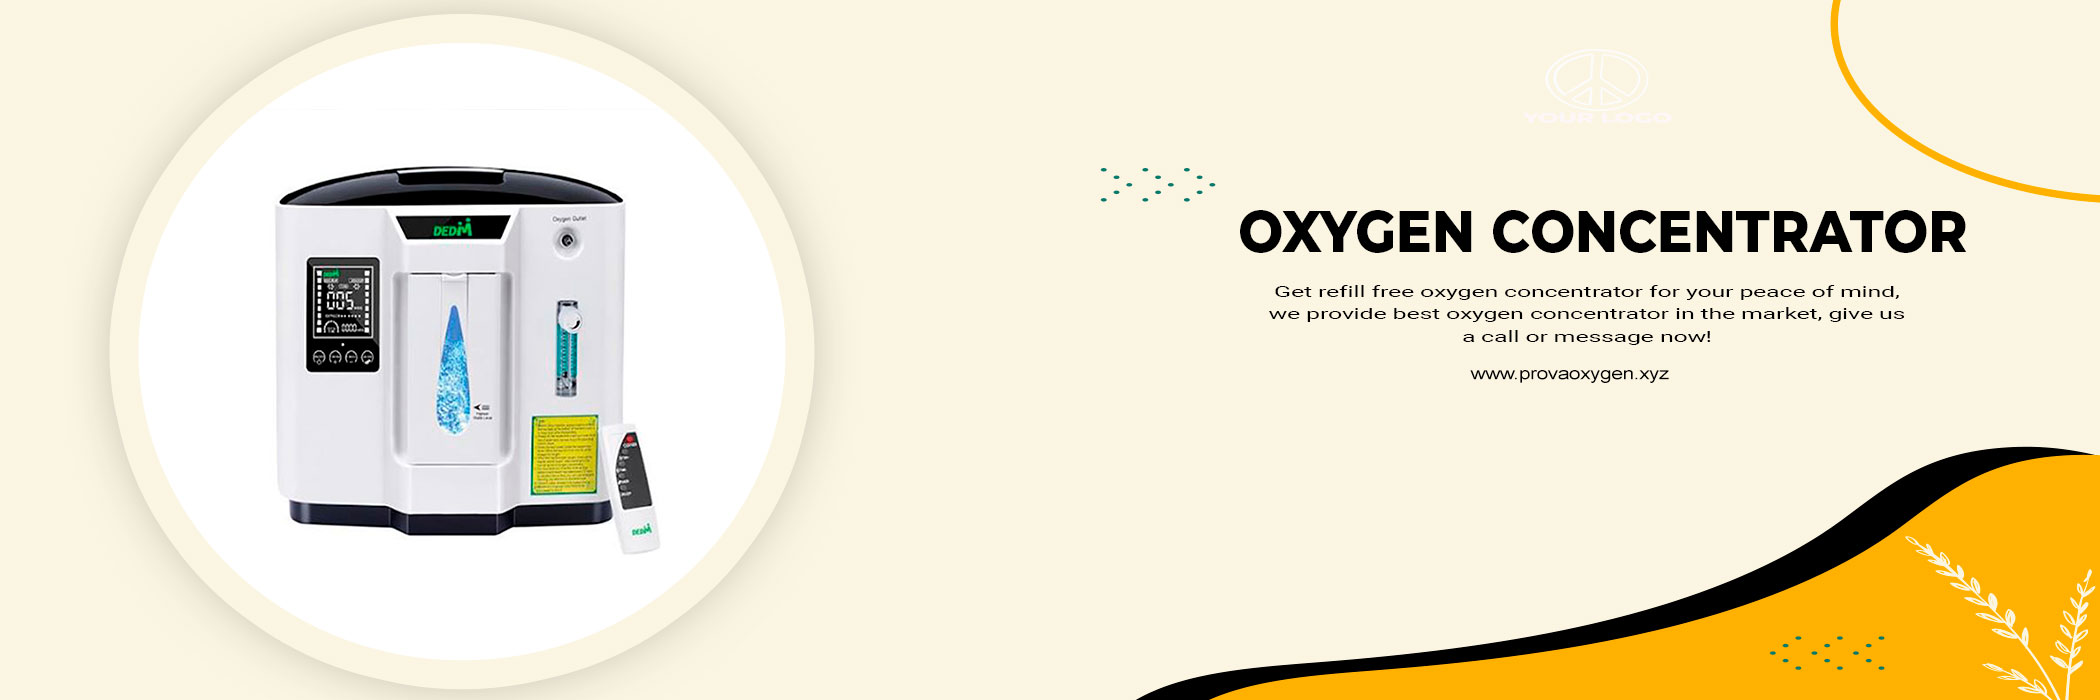 provaoxyge-oxygen-concentrator